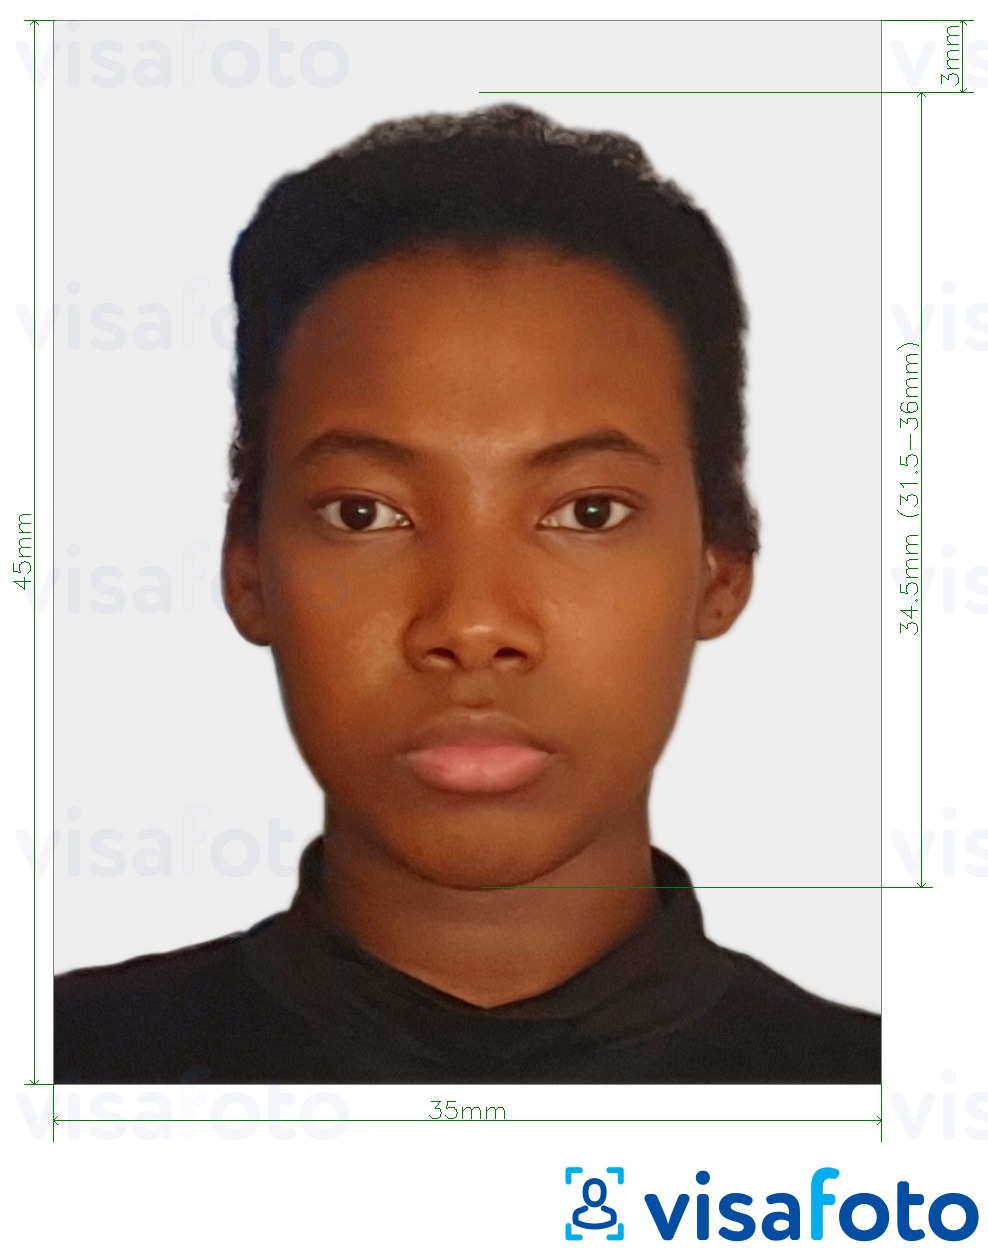 Exemples sur des photos pour Visa de la Côte d'Ivoire 4.5x3.5 cm (45x35 mm) avec les spécifications de taille exactes